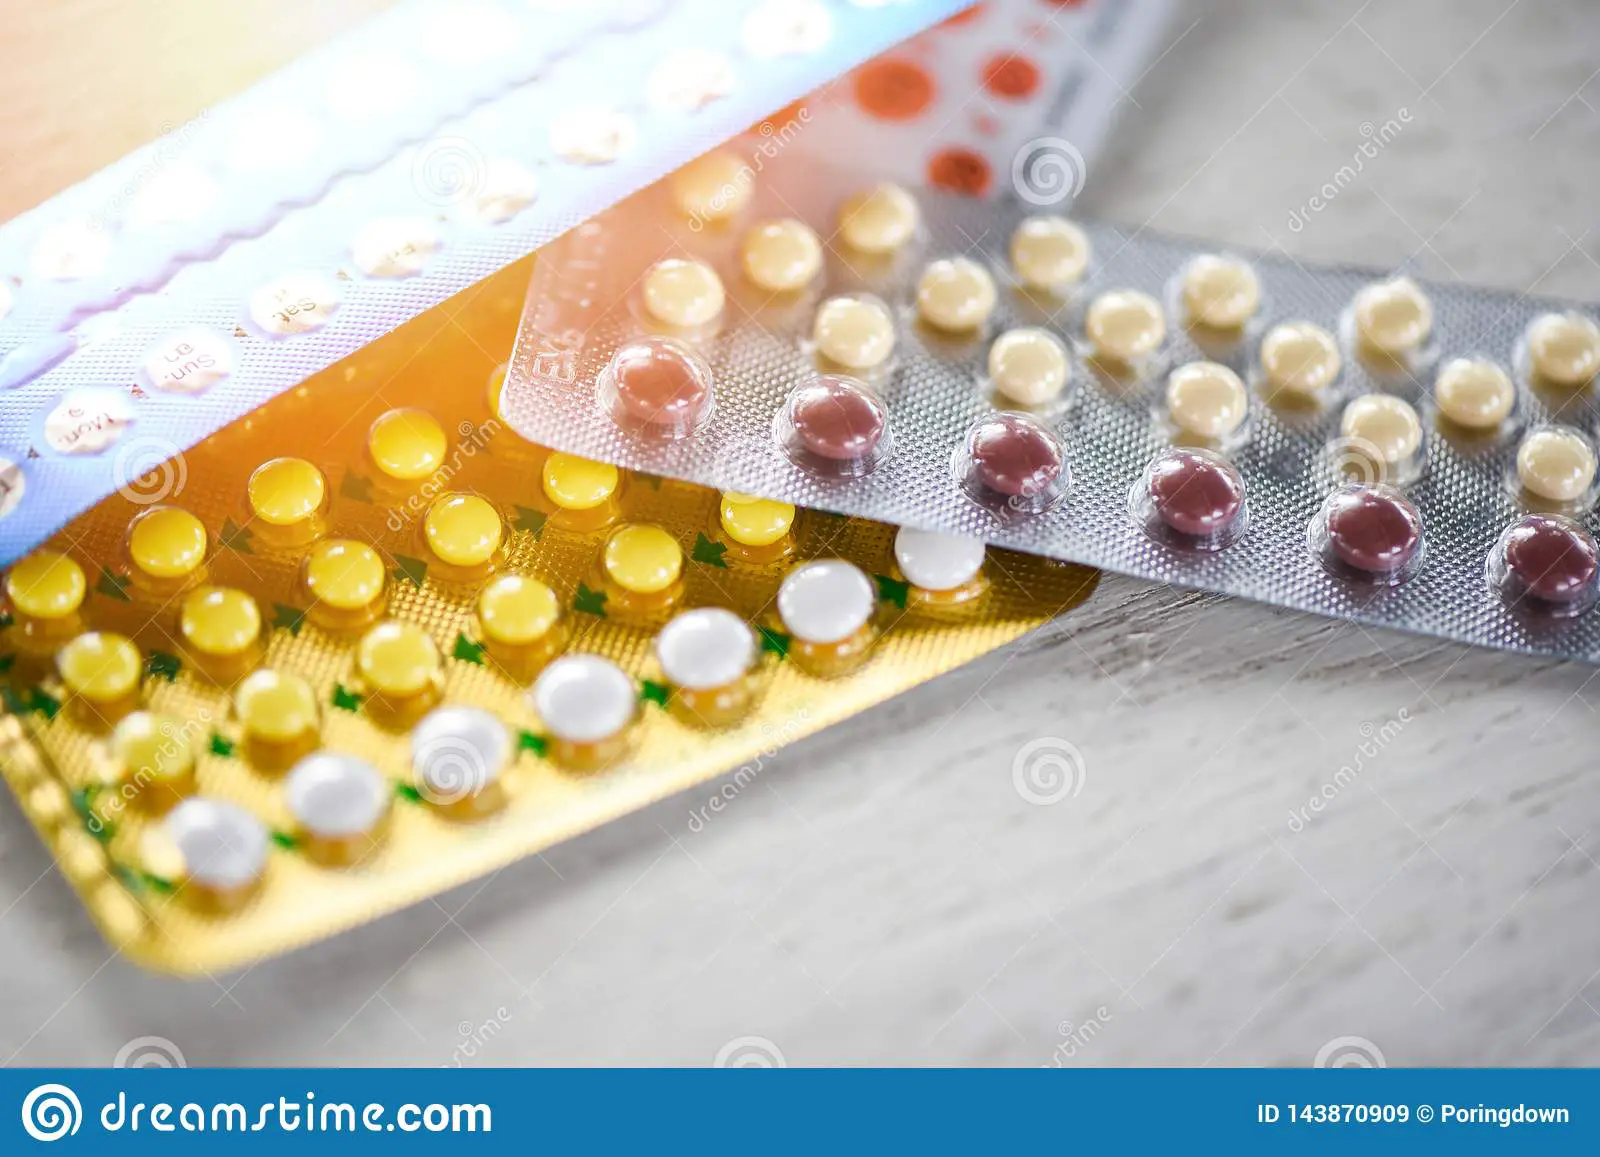 Contraceptive pill prevent pregnancy contraception concept ...